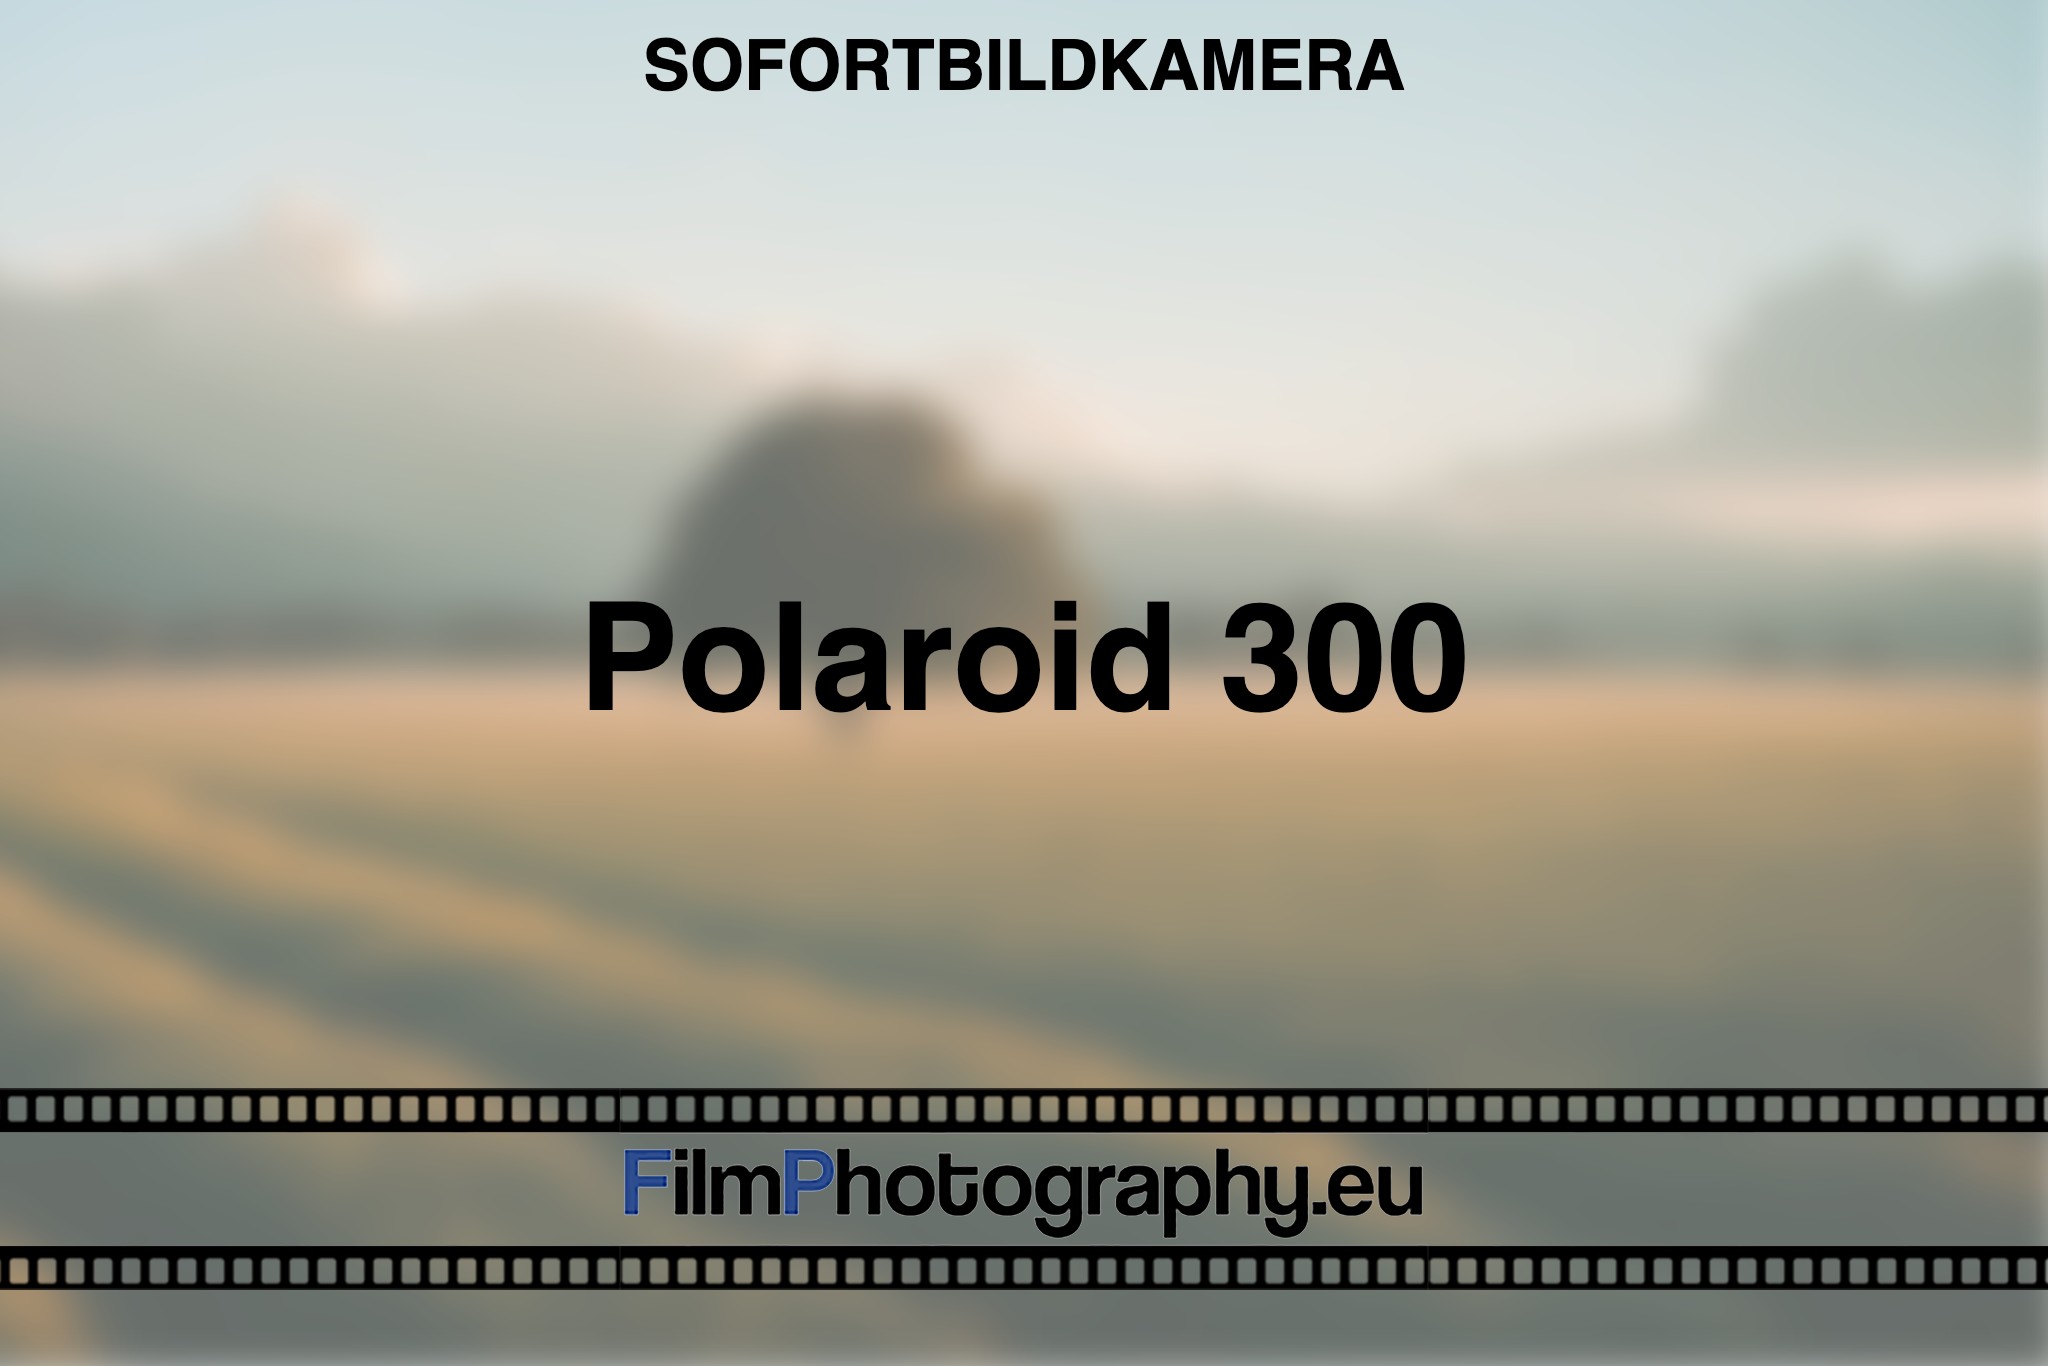 polaroid-300-sofortbildkamera-bnv